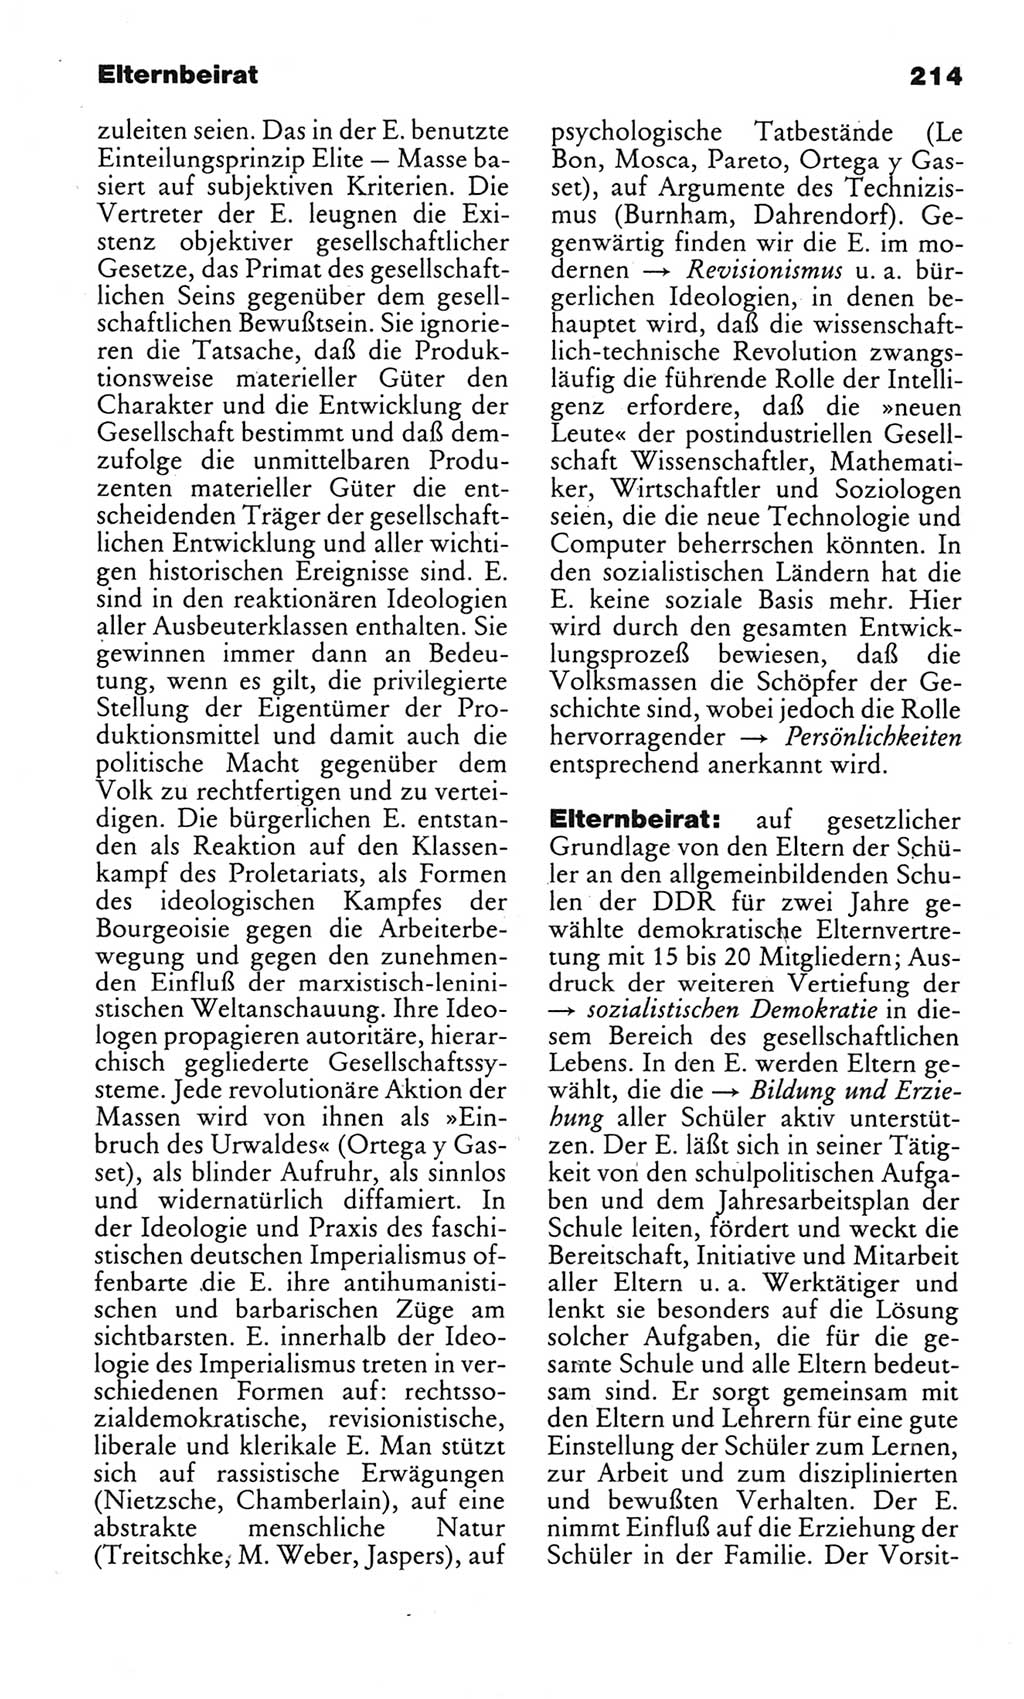 Kleines politisches Wörterbuch [Deutsche Demokratische Republik (DDR)] 1983, Seite 214 (Kl. pol. Wb. DDR 1983, S. 214)